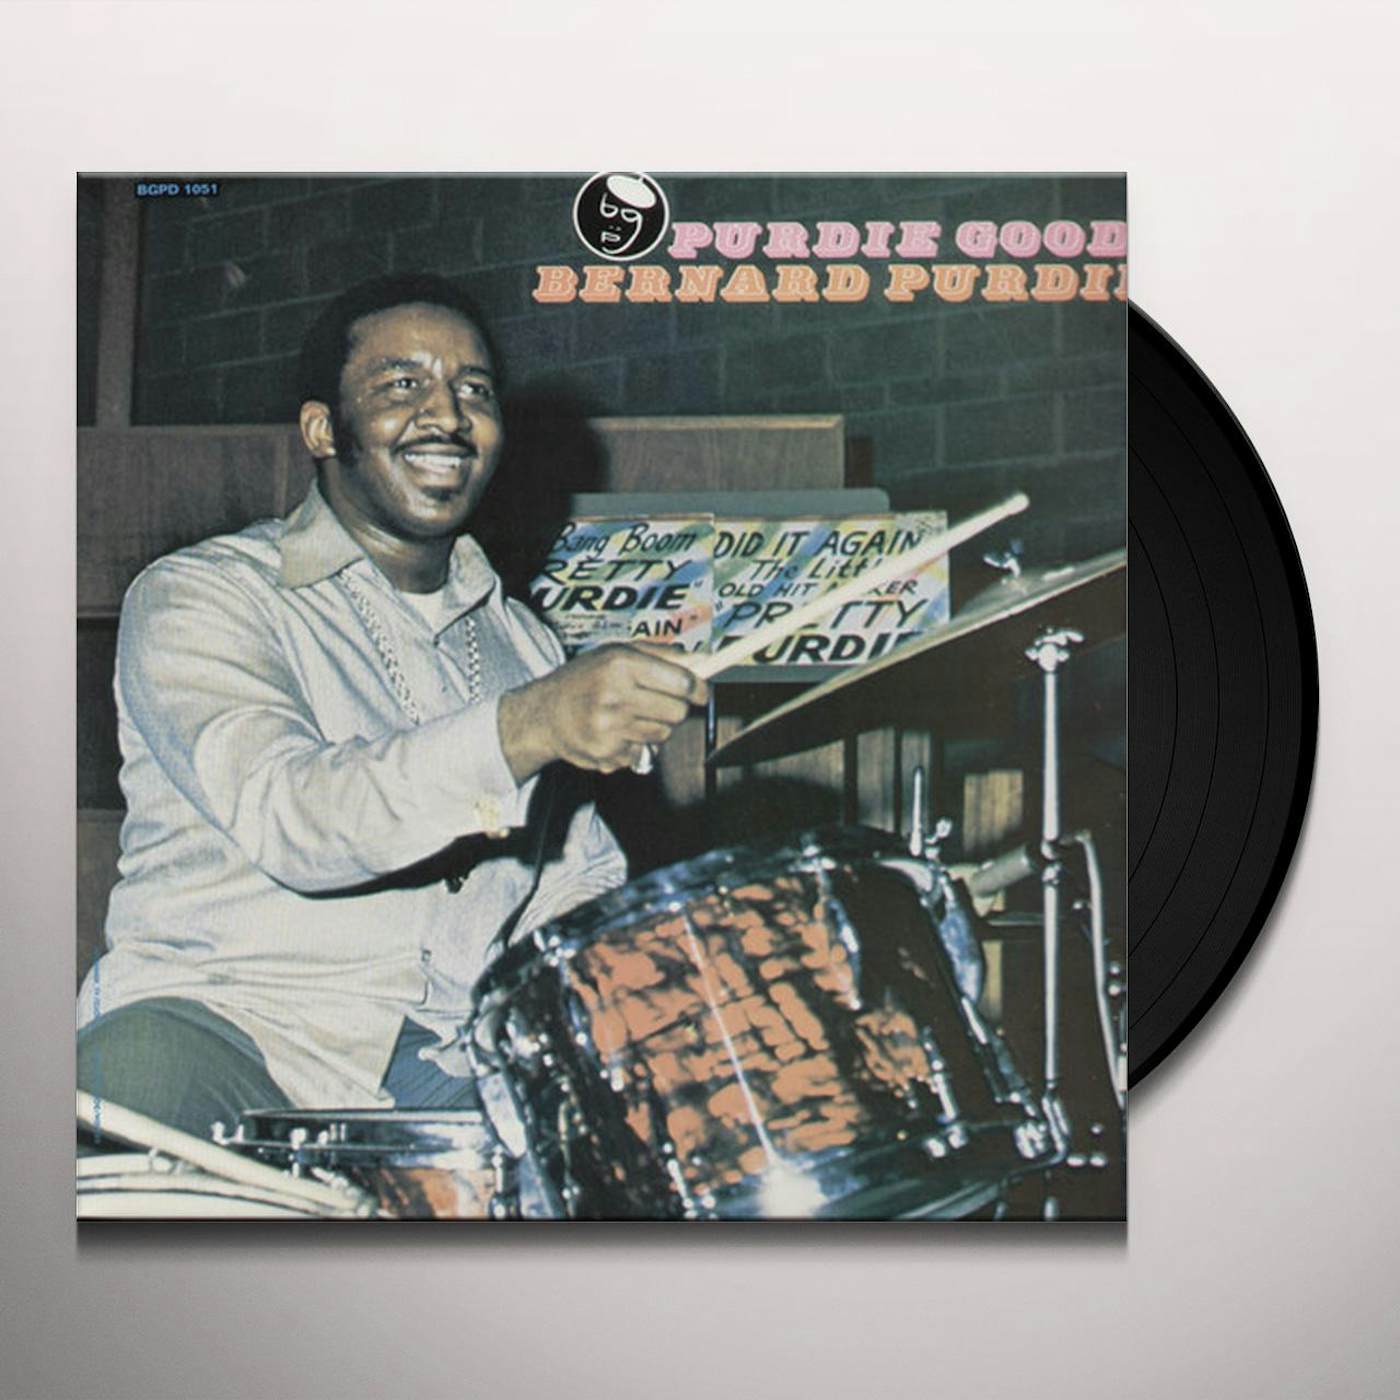 Bernard Purdie PURDIE GOOD Vinyl Record